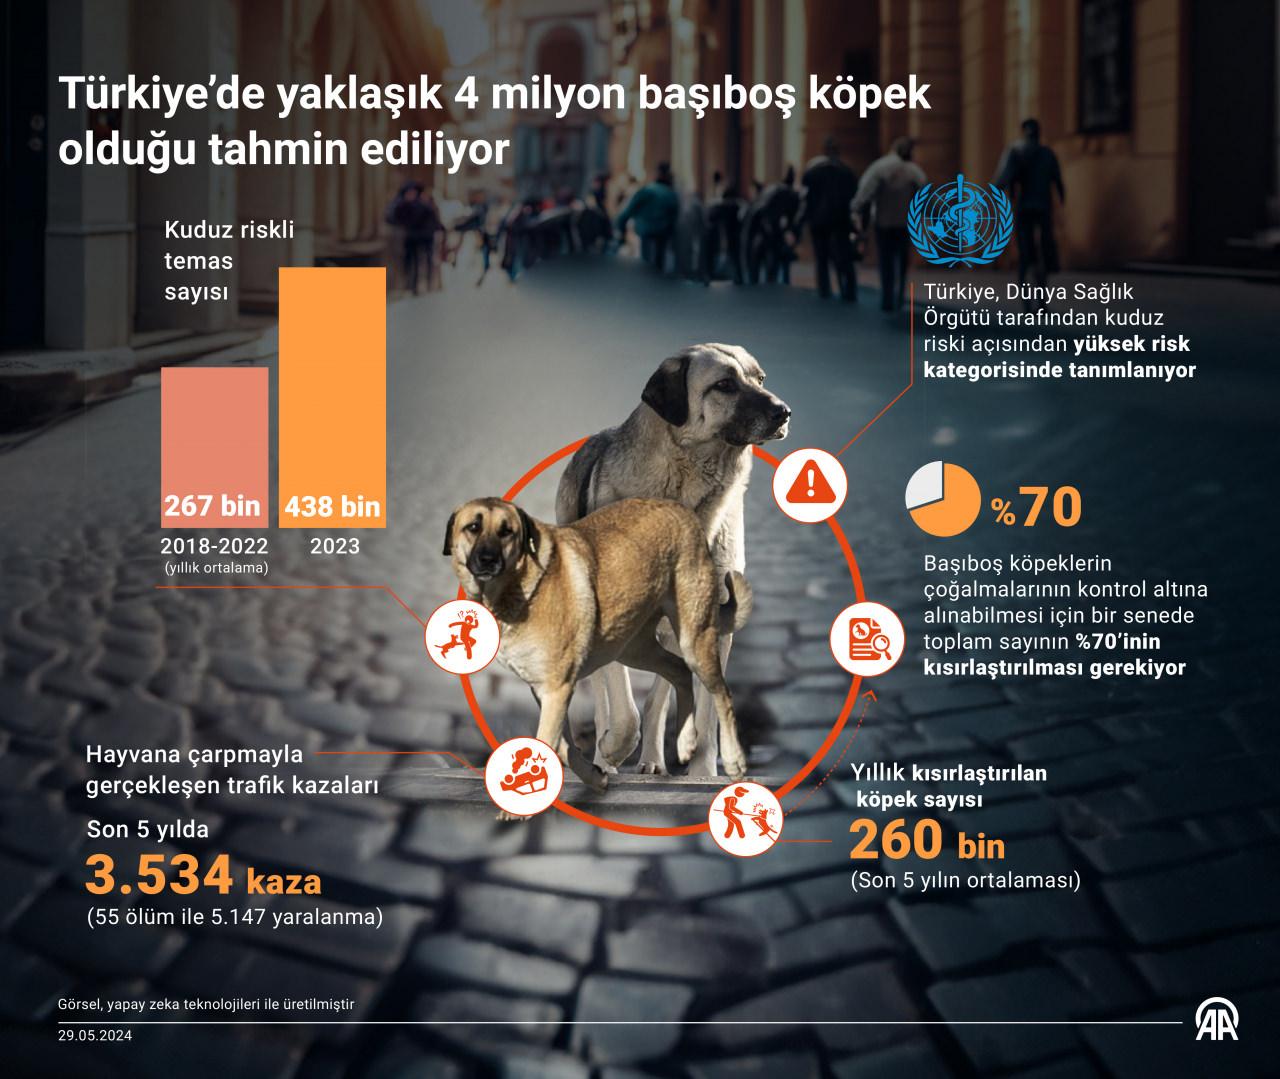 Türkiye'de 5 yıldır kuduz vakaları nedeniyle 12 ilde karantina uygulandı